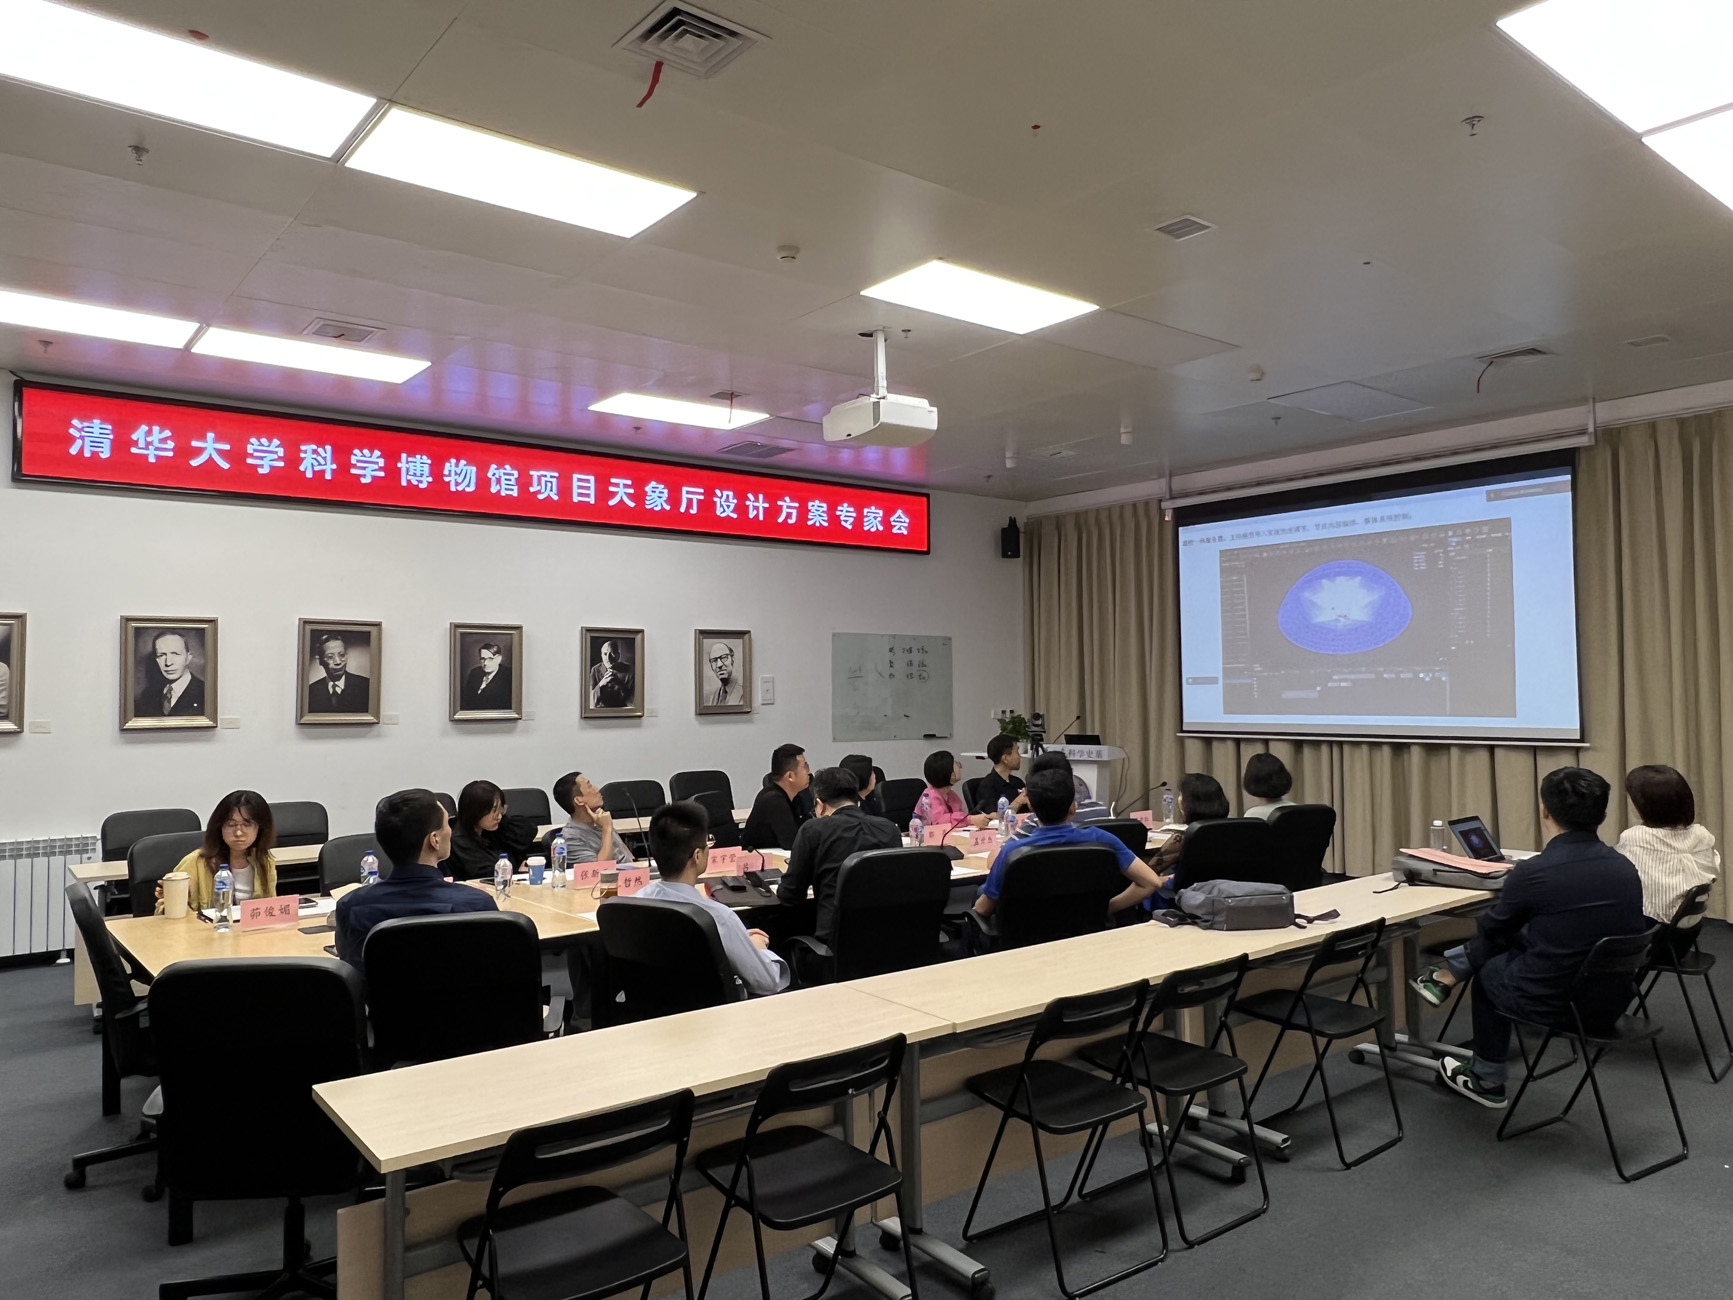 清华大学科学博物馆天象厅设计方案专家会成功举办